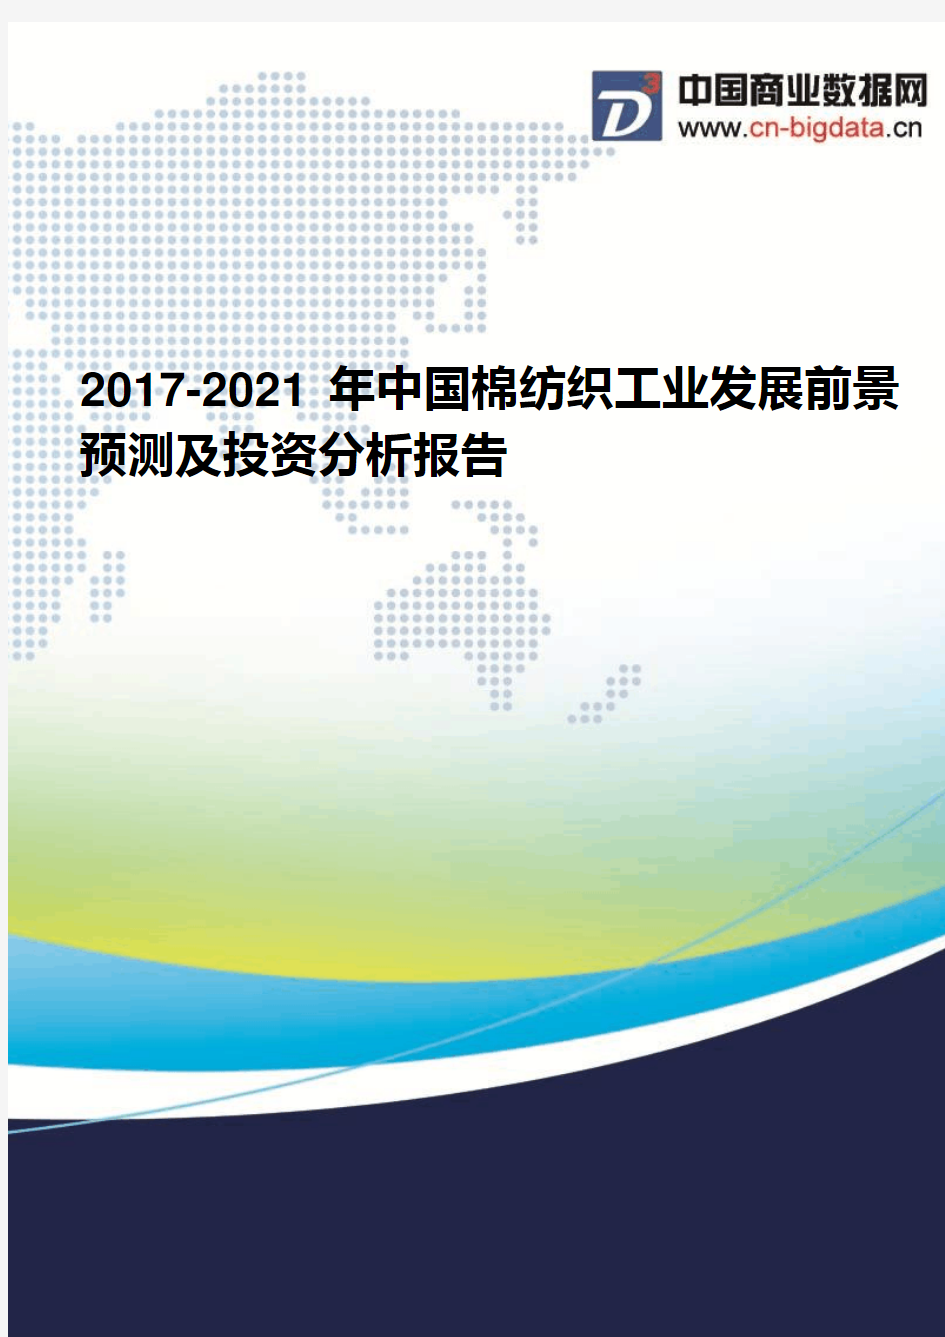 2017-2021年中国棉纺织工业发展前景预测及投资分析报告(2017版目录)